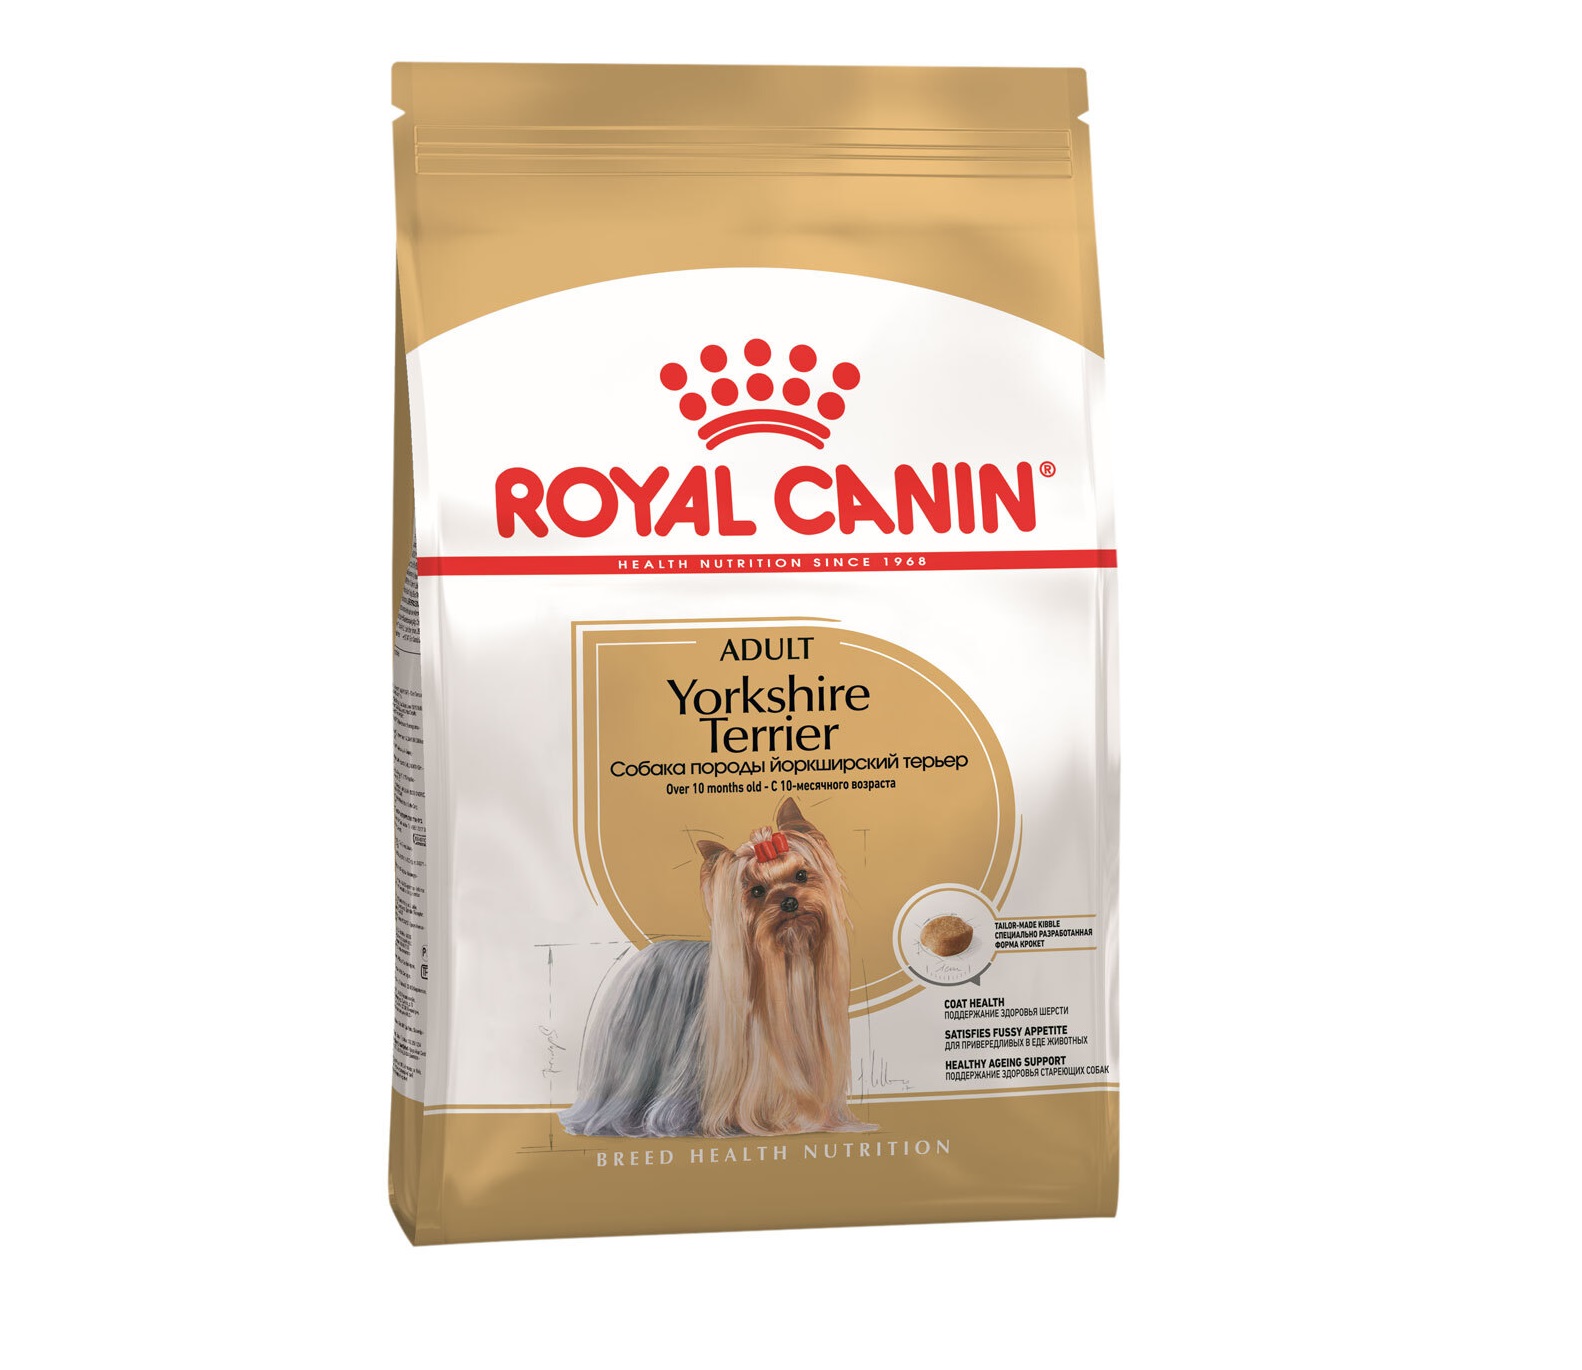 Ройал Канин Йорки взрослые 500гр (Royal Canin) + Подарок